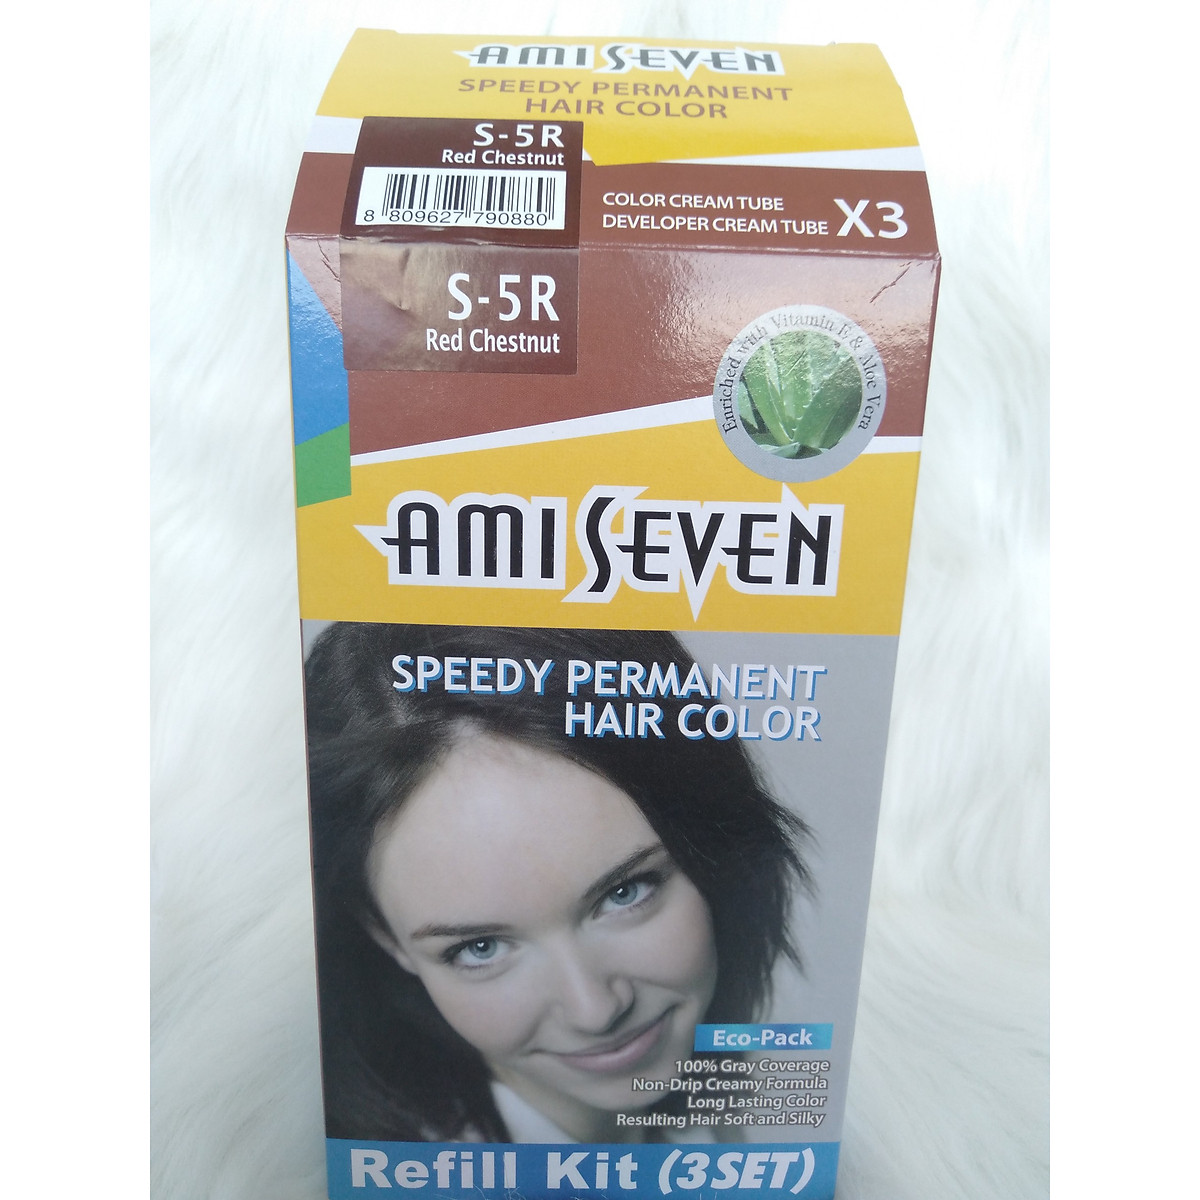 Ami Seven - thương hiệu chăm sóc tóc nổi tiếng đến từ Nhật Bản. Với kinh nghiệm hơn 30 năm trong ngành làm đẹp tóc, Ami Seven mang đến những sản phẩm chất lượng và đem đến cho khách hàng nhiều lựa chọn dành cho tóc của mình.